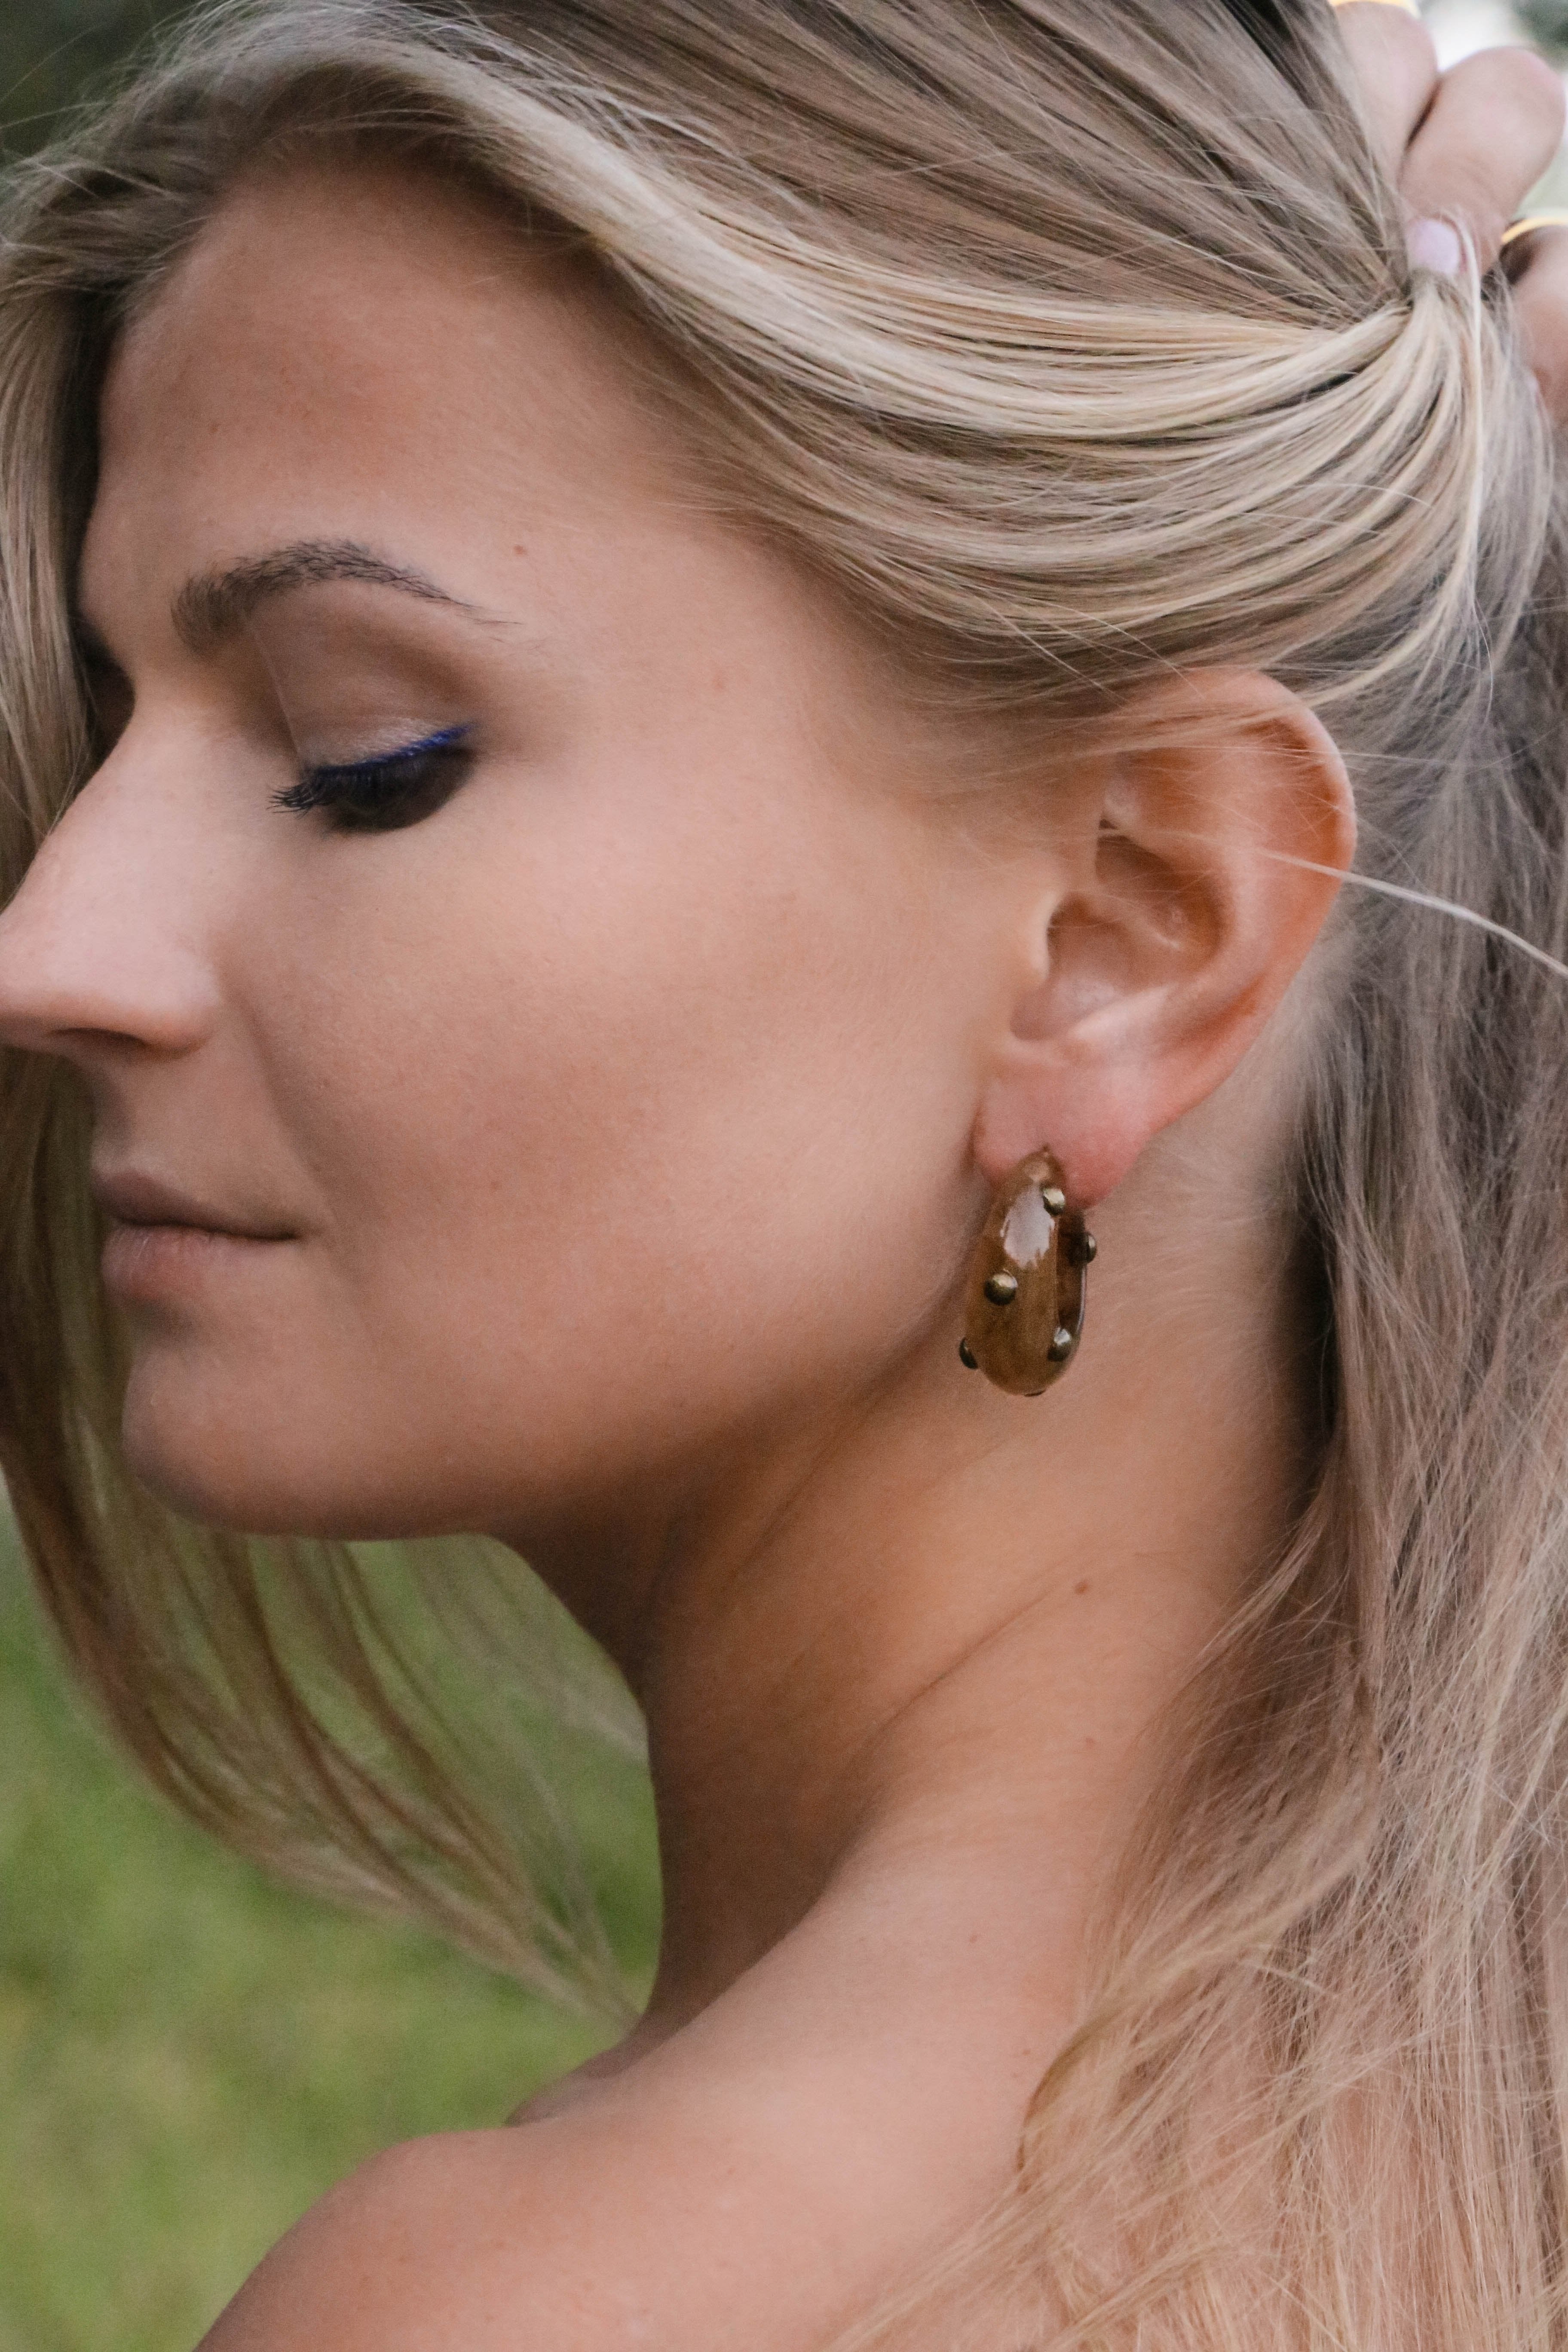 Vintage Lucite Hoop Earrings - Boutique Minimaliste has waterproof, durable, elegant and vintage inspired jewelry